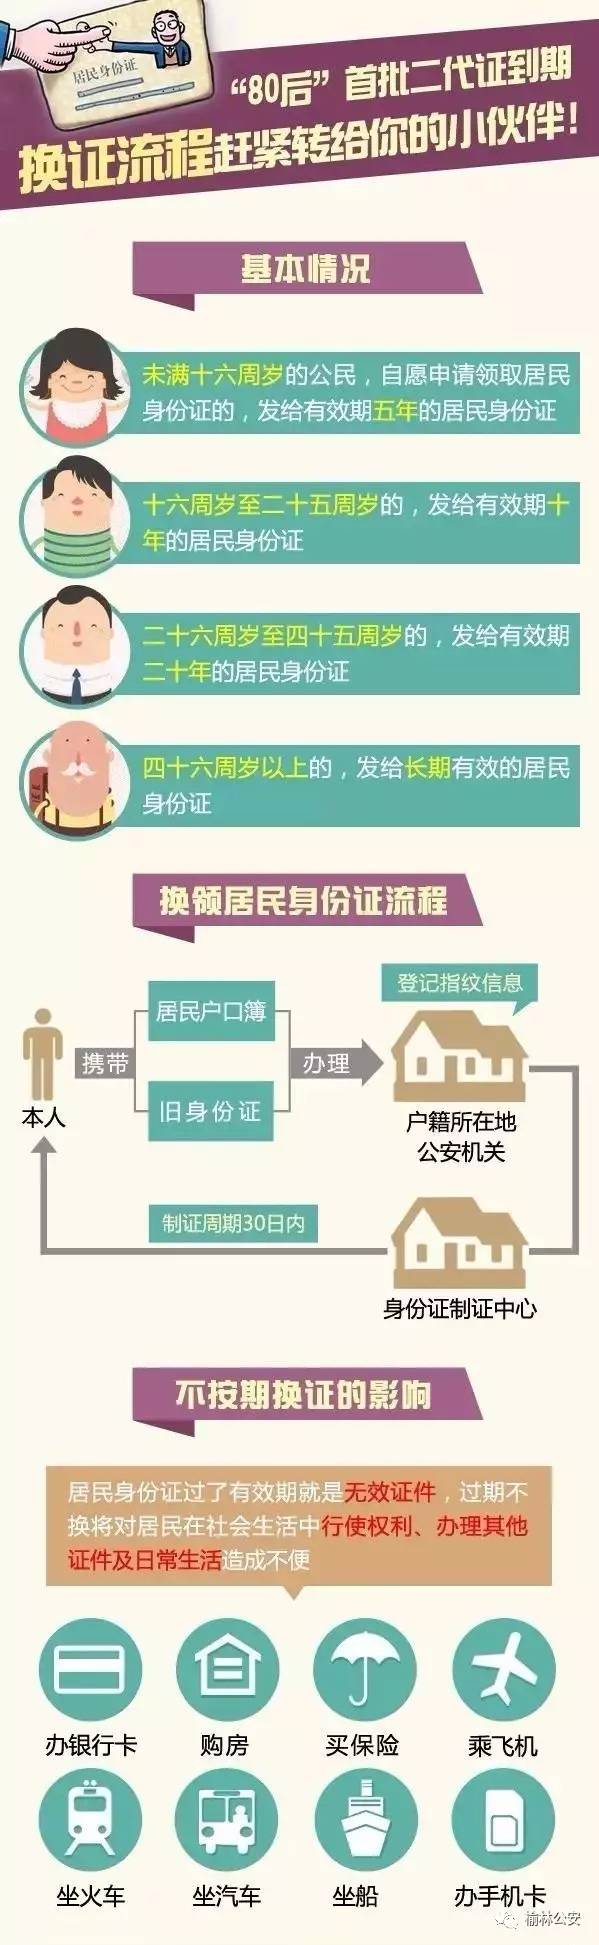 《中华人民共和国居民身份证法》规定,16周岁以下居民的二代证有效期